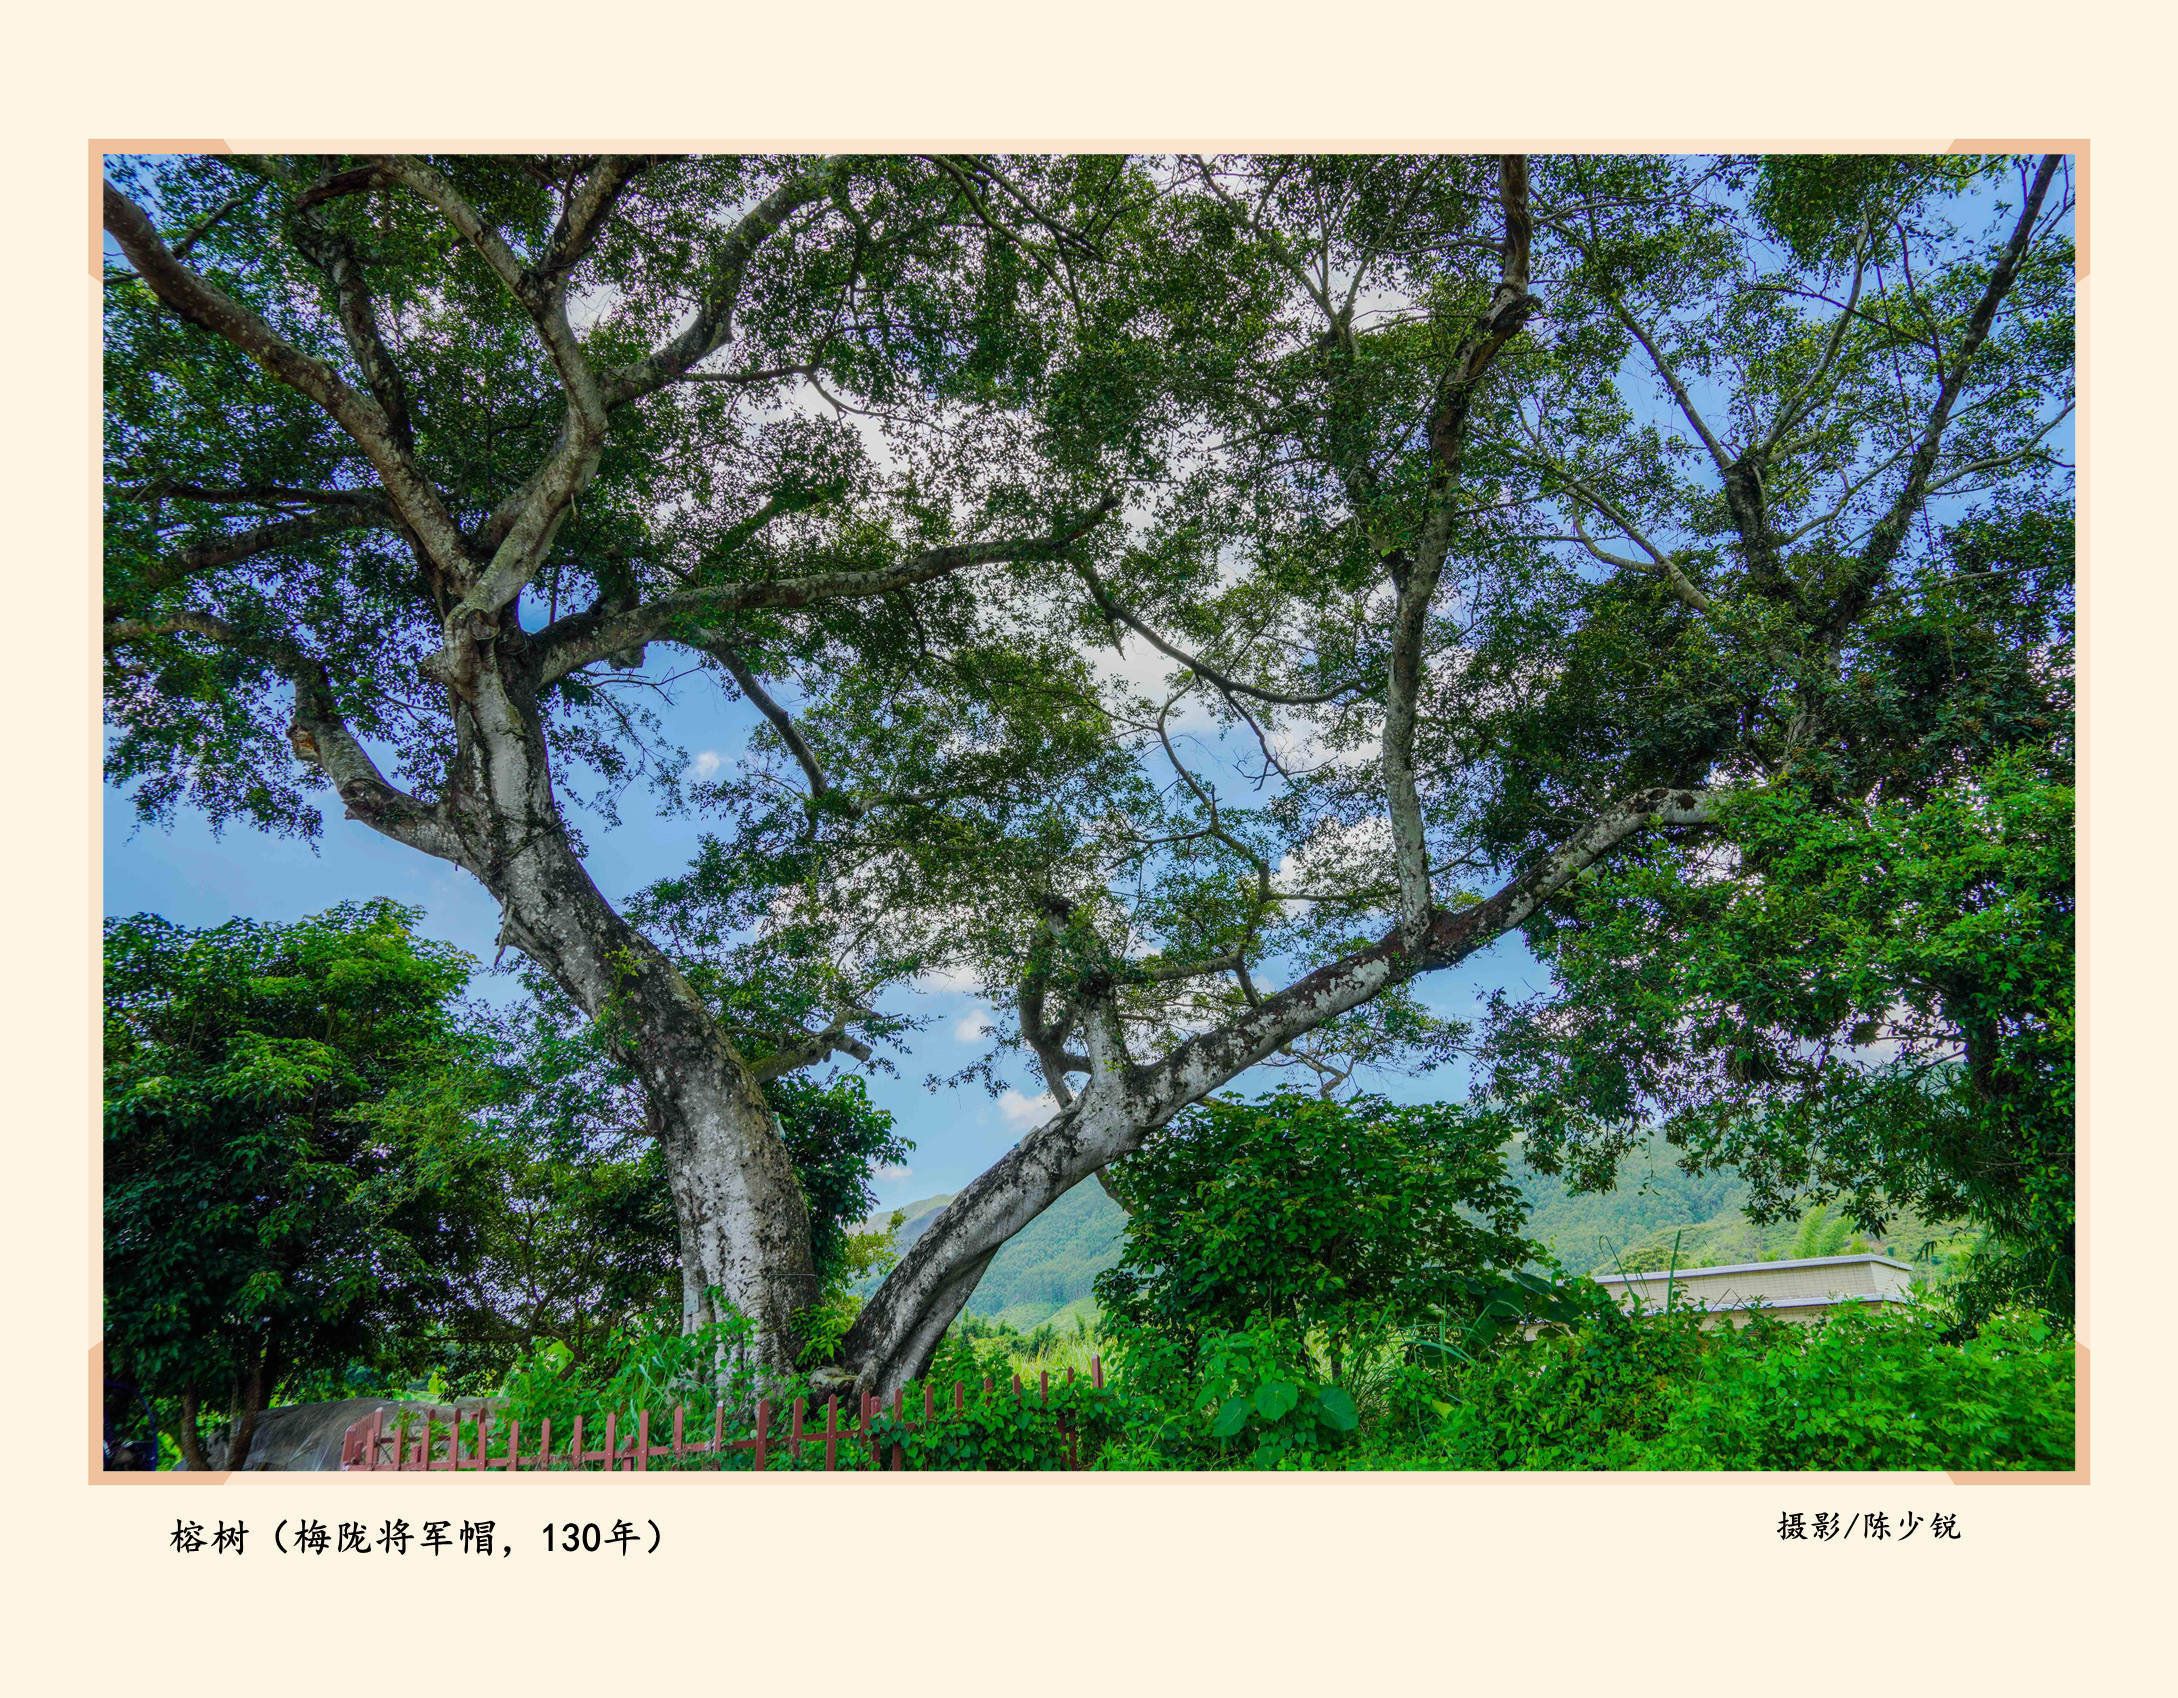 海丰绿美乡愁！海丰县古树名木保护率达100%